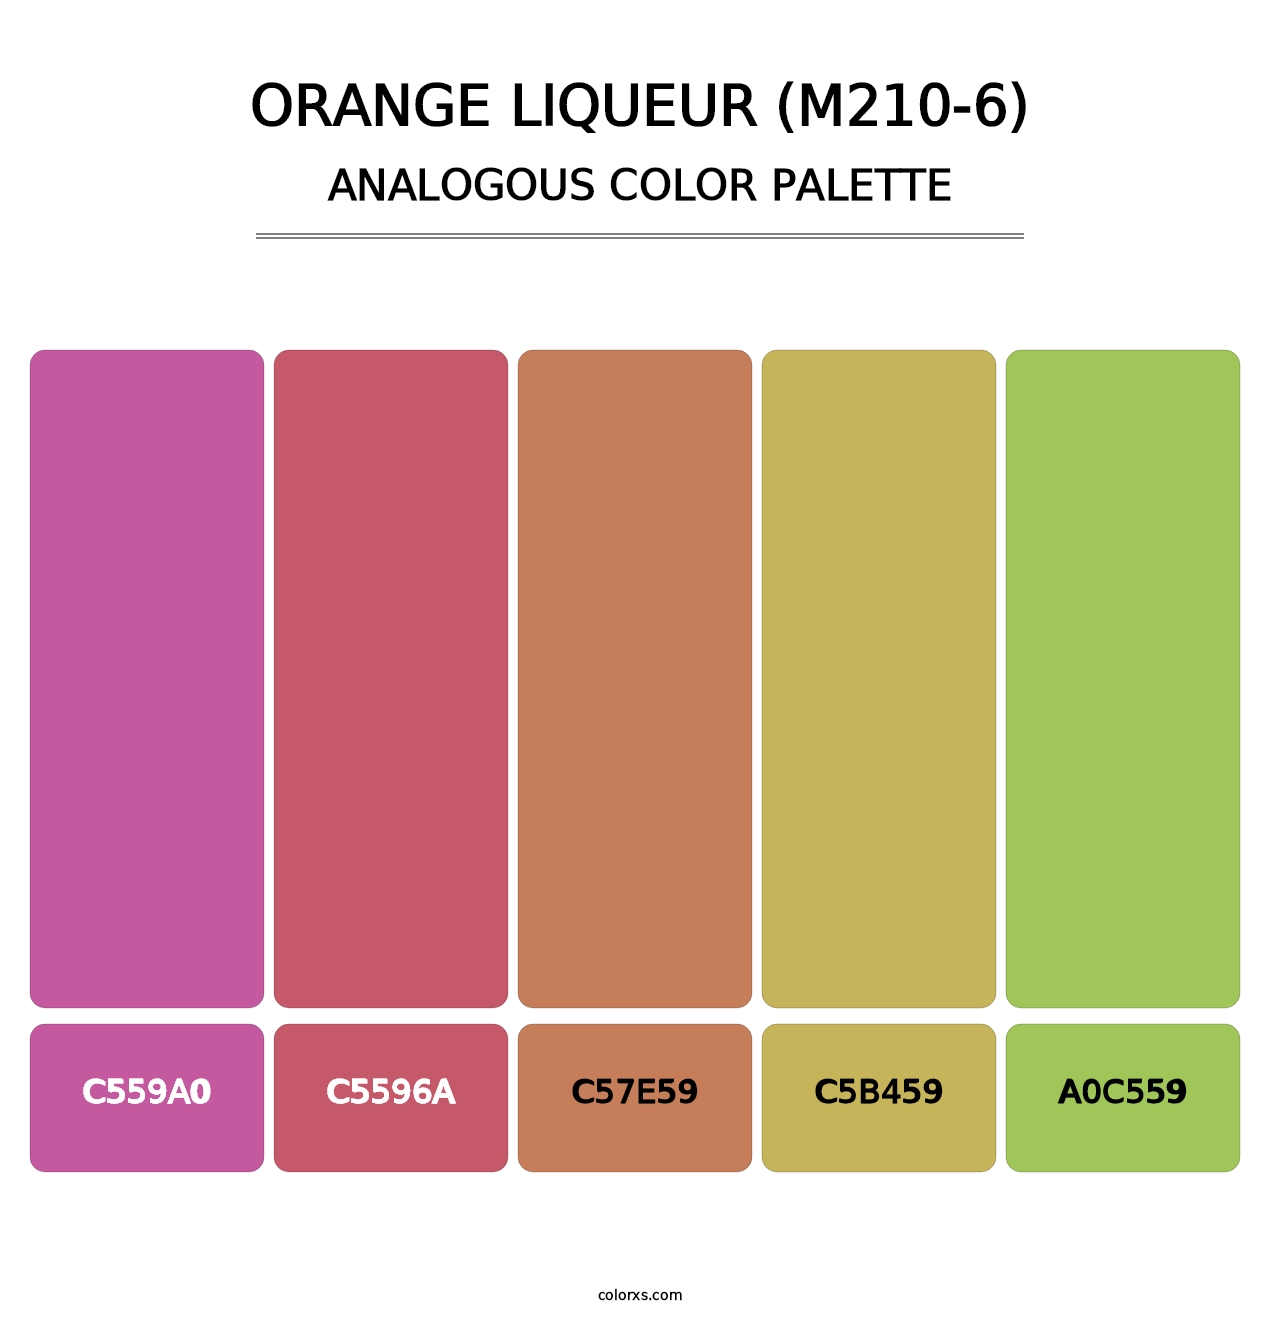 Orange Liqueur (M210-6) - Analogous Color Palette